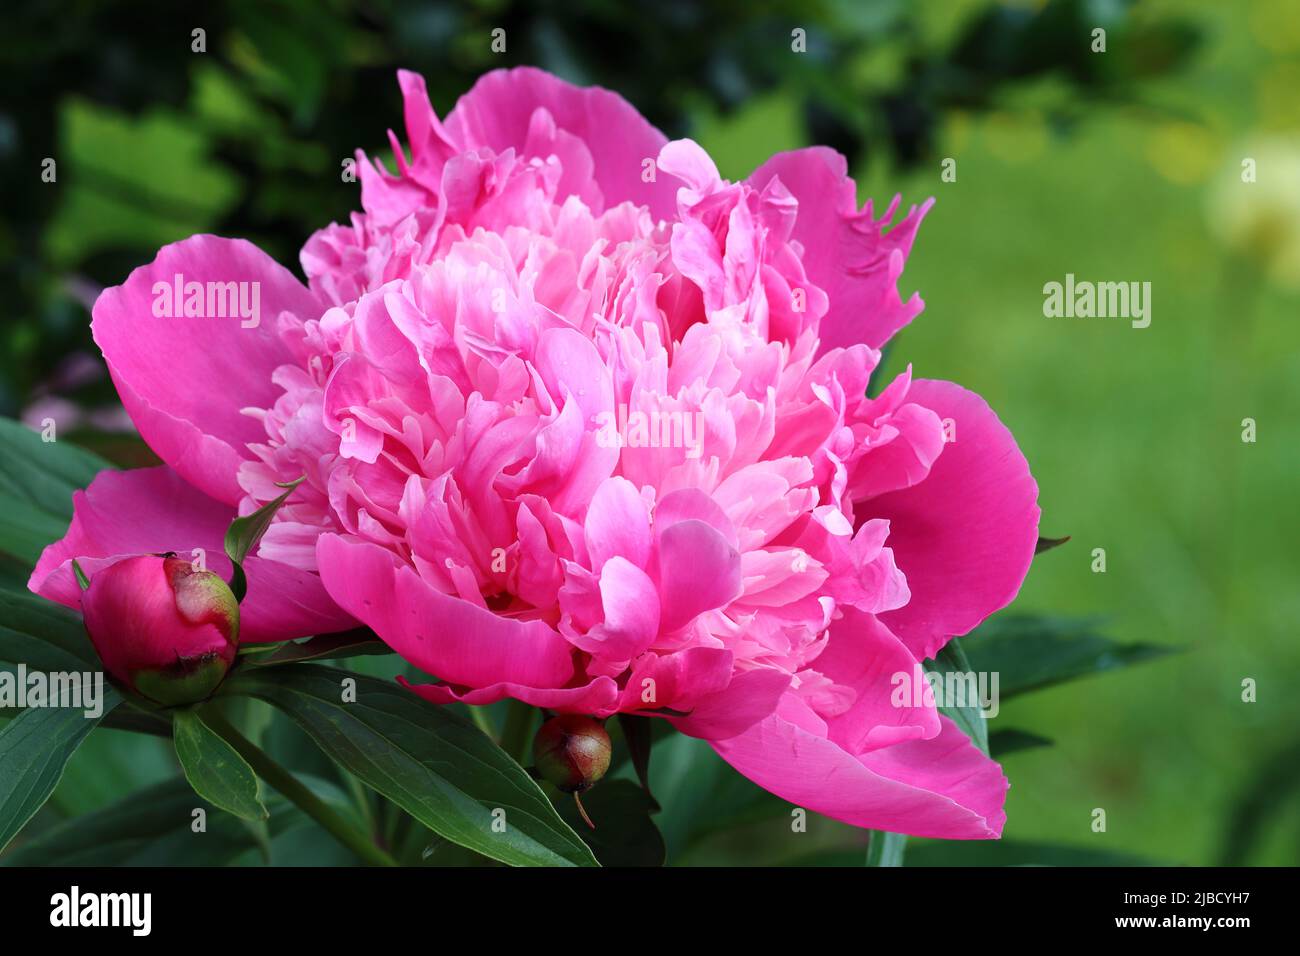 primo piano di una bella peonia rosa completamente fiorita su uno sfondo verde scuro, spazio copia Foto Stock